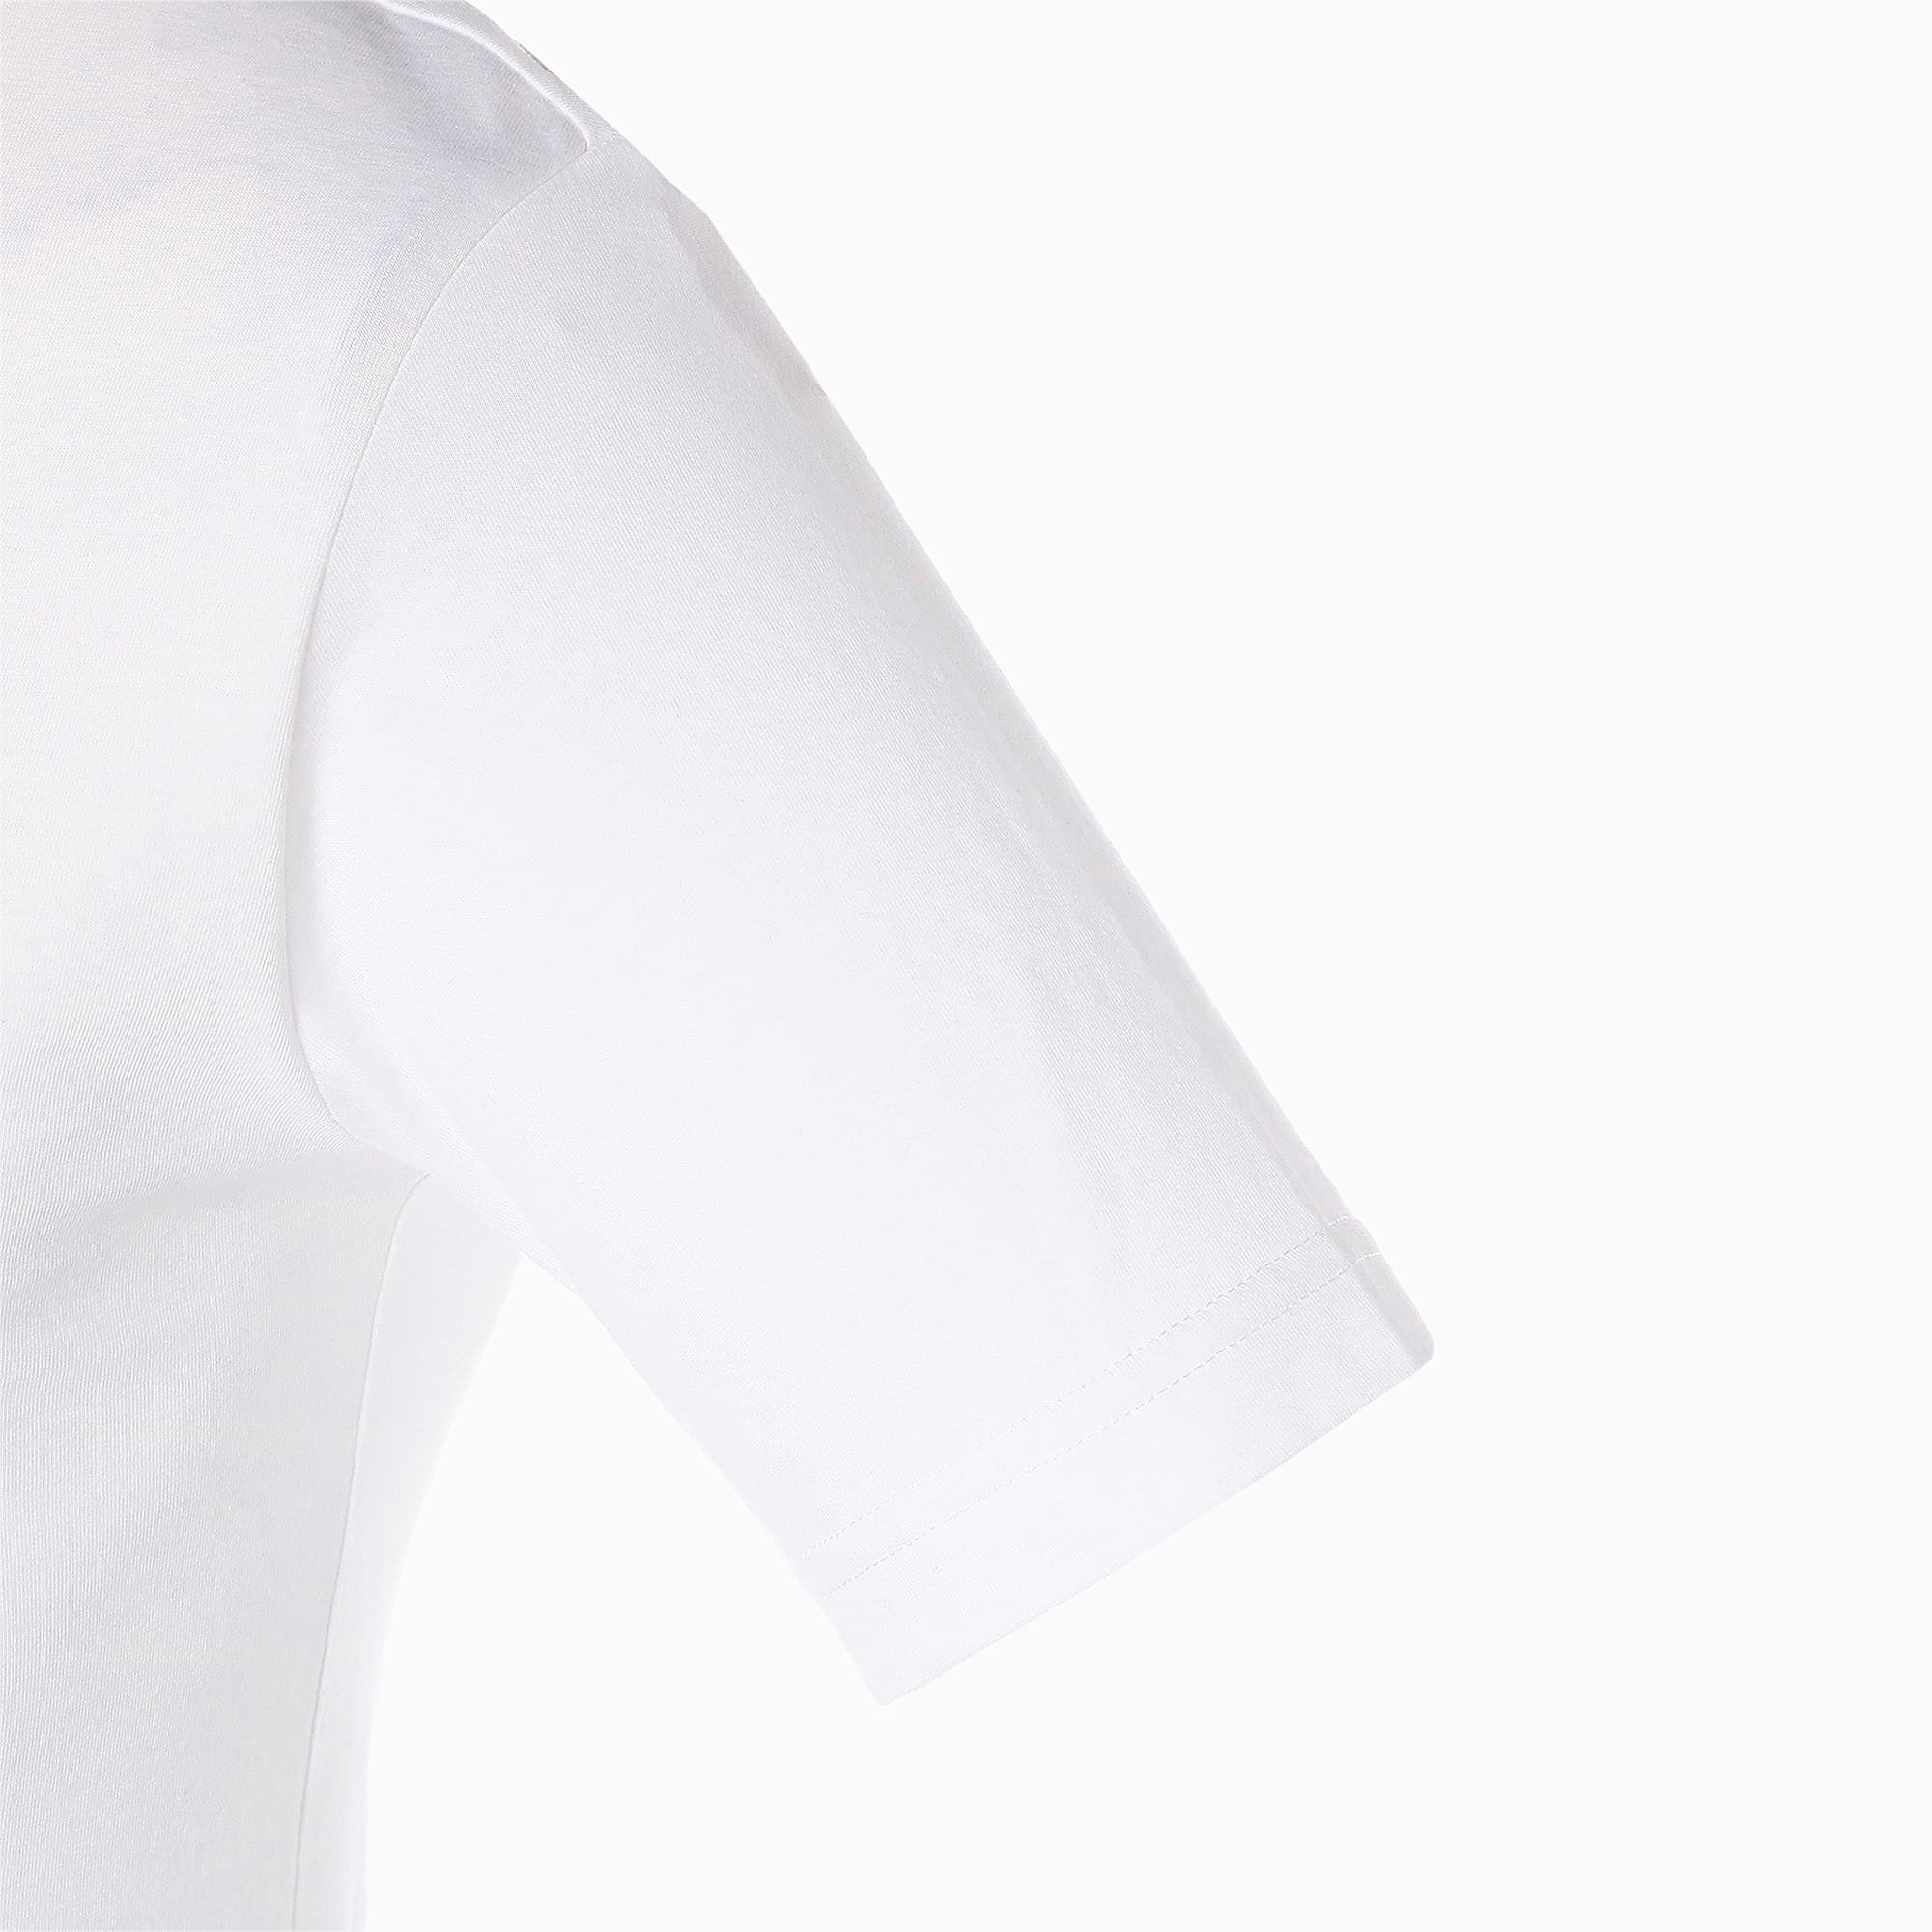 Njr 5 0 ネイマール Tシャツ Puma White プーマ ネイマール着用アイテム プーマ